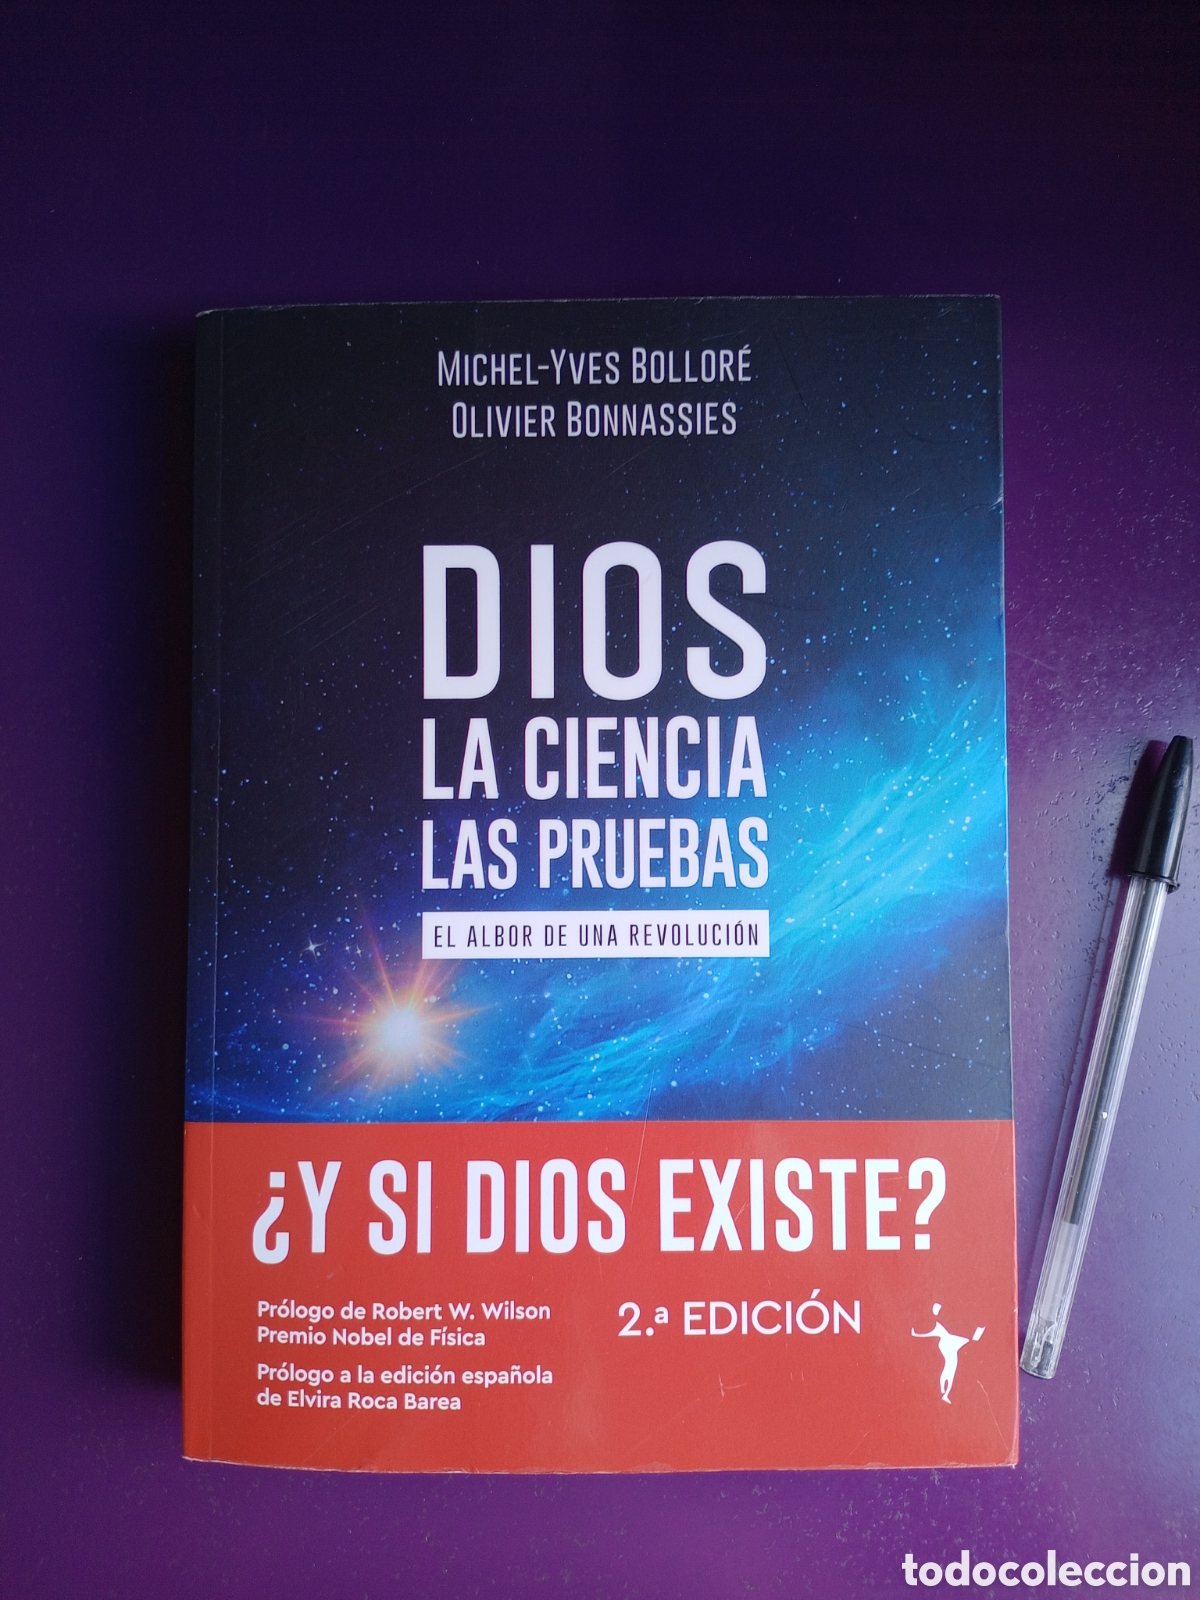 dios, la ciencia, las pruebas - michel yves bol - Buy Used books about  religion on todocoleccion